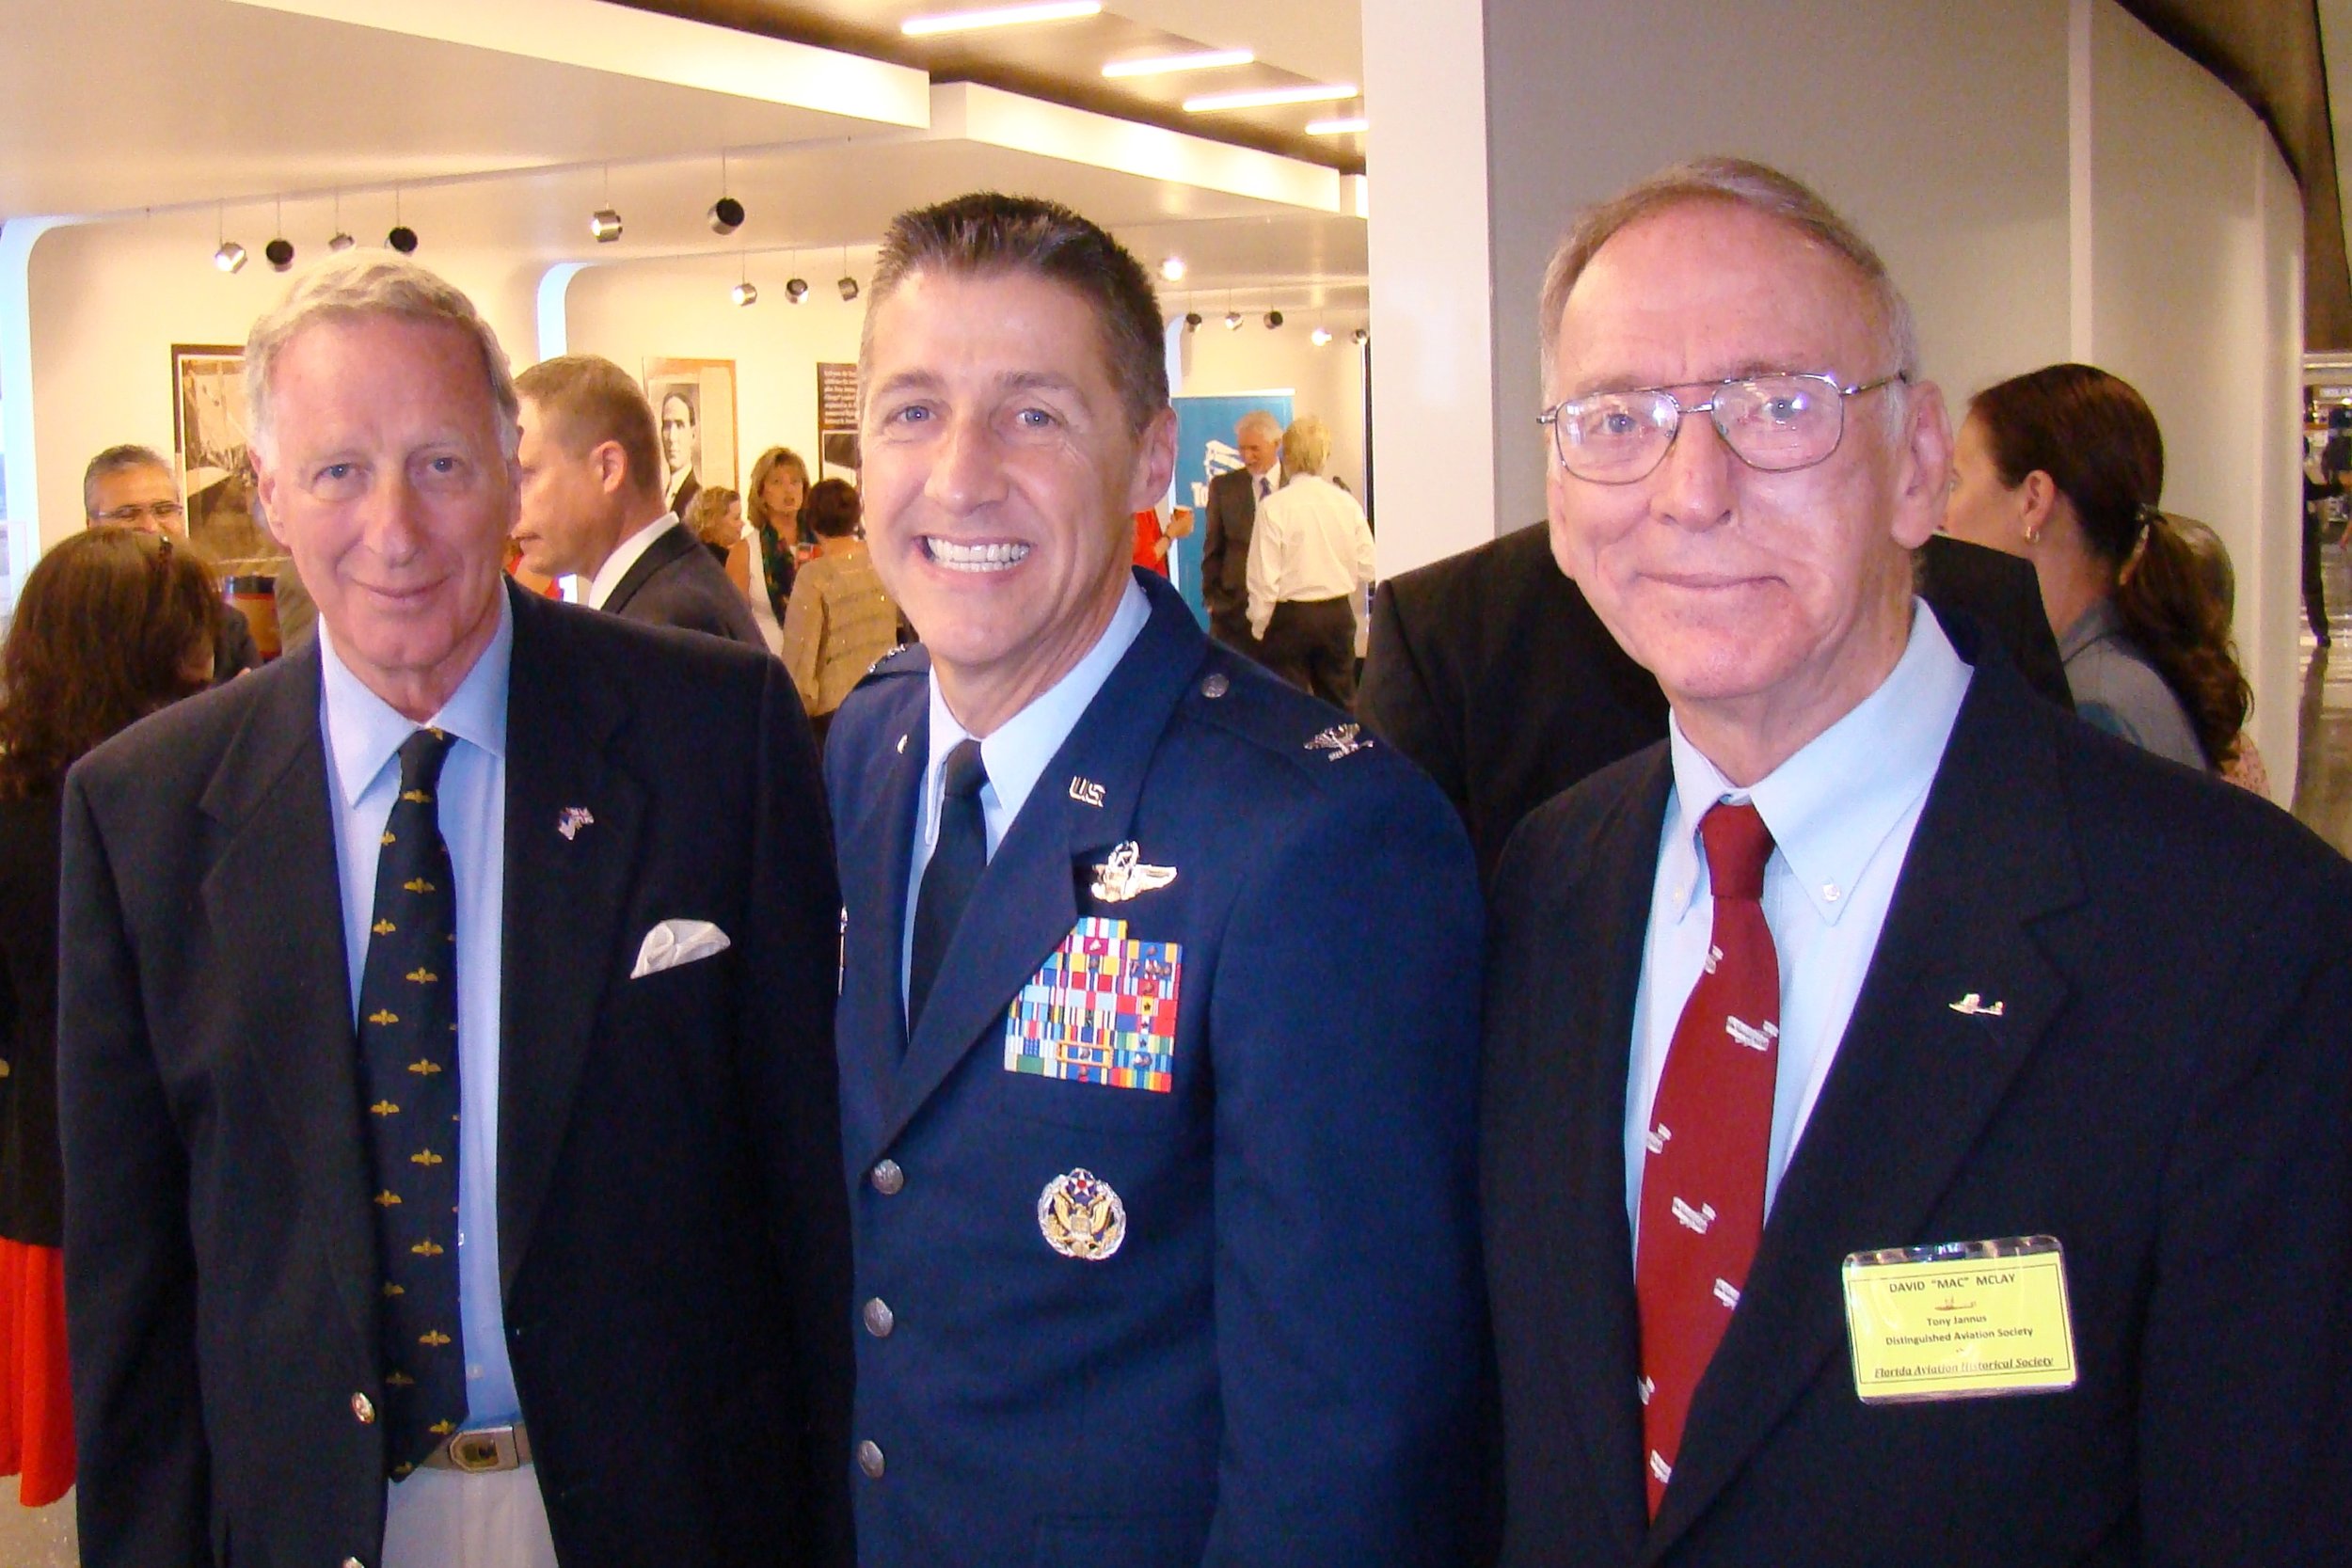 Colin Howgill, Scott DeThomas & David McLay at Press Conference, 21  May '14.JPG